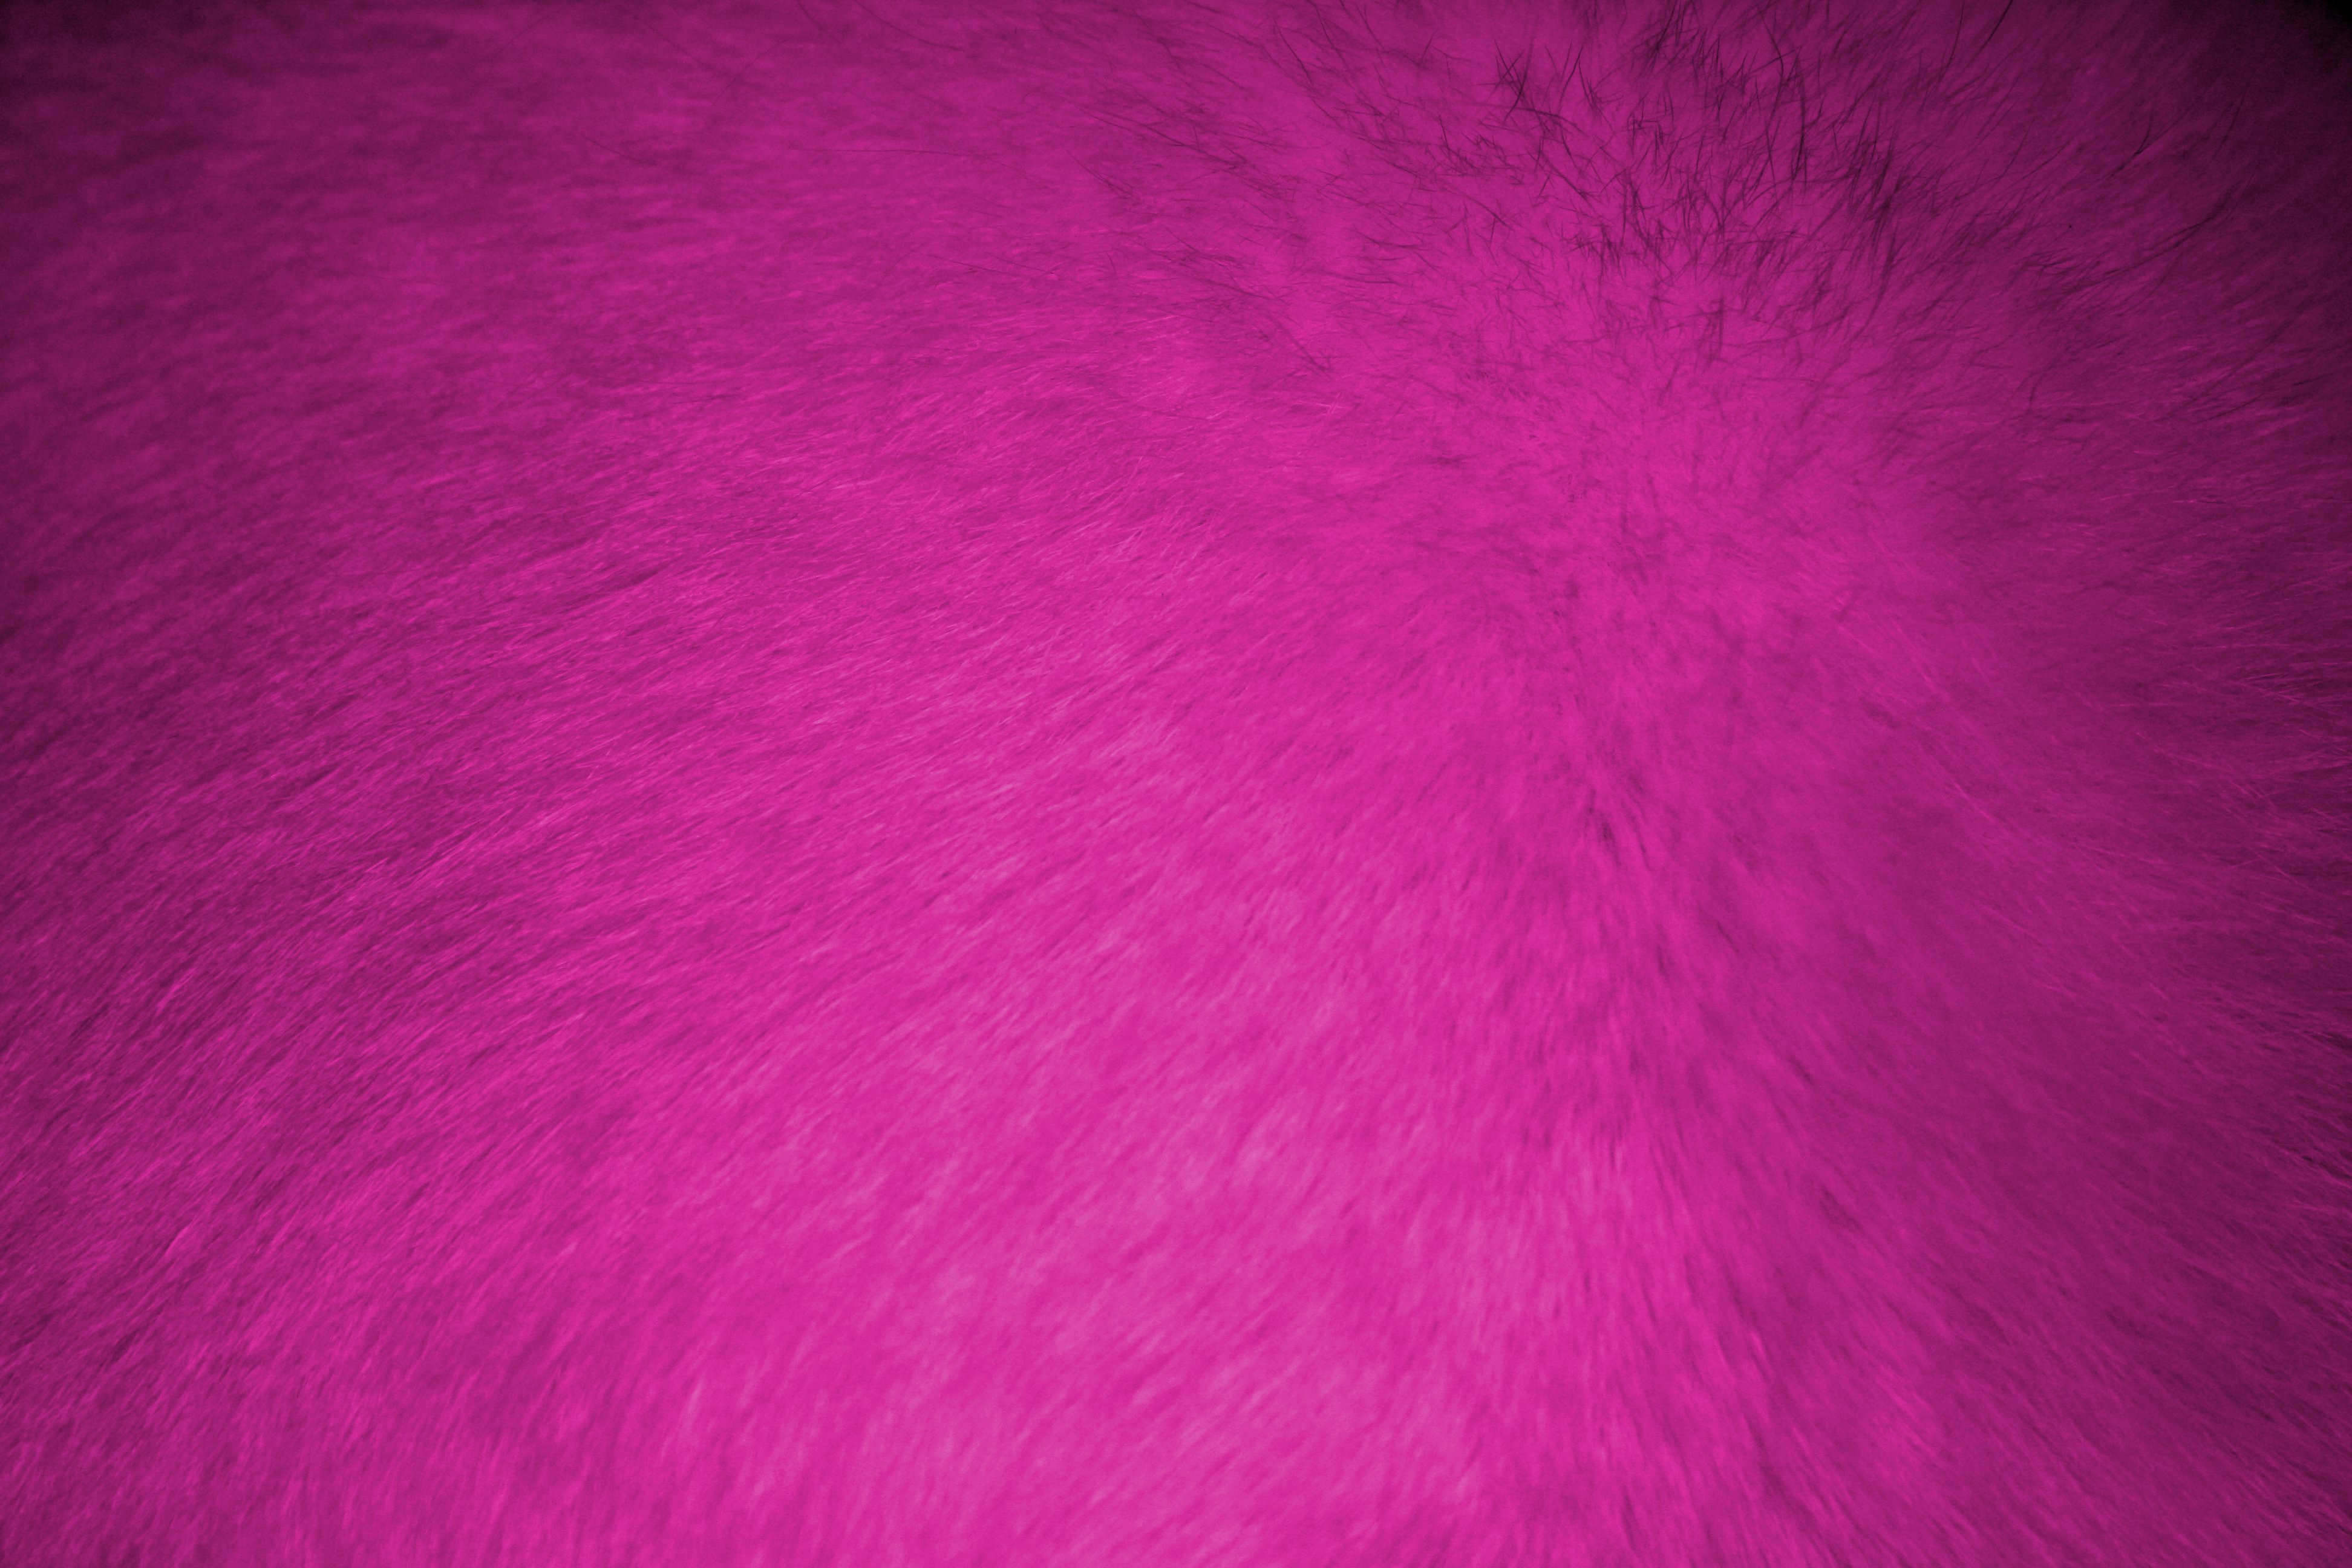 Hot Pink Fur Texture Picture | Free Photograph | Photos Public Domain